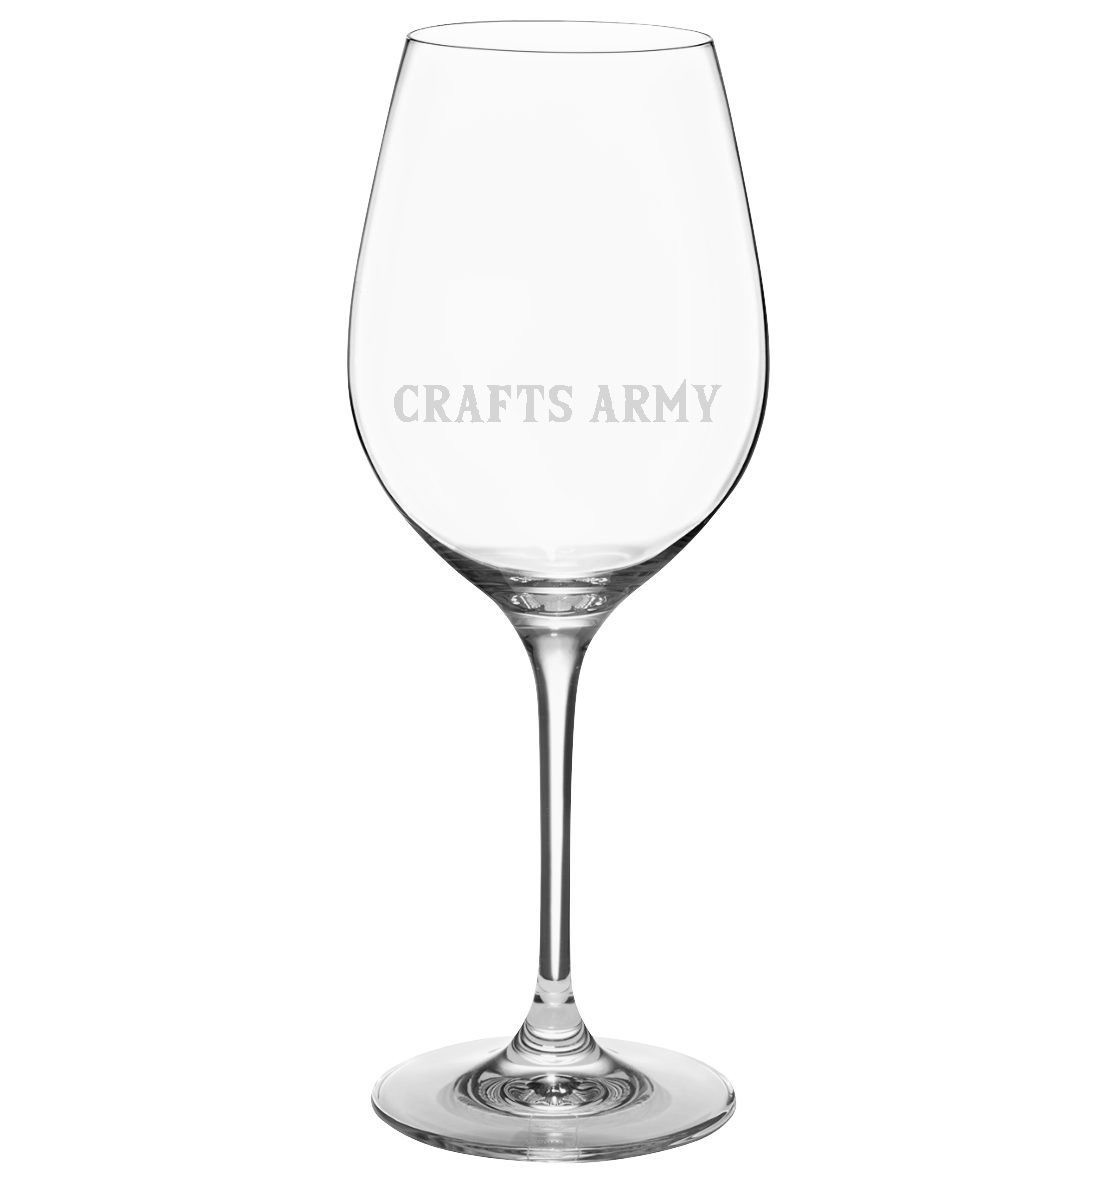 Crafts Army Gravur - Wein Glas